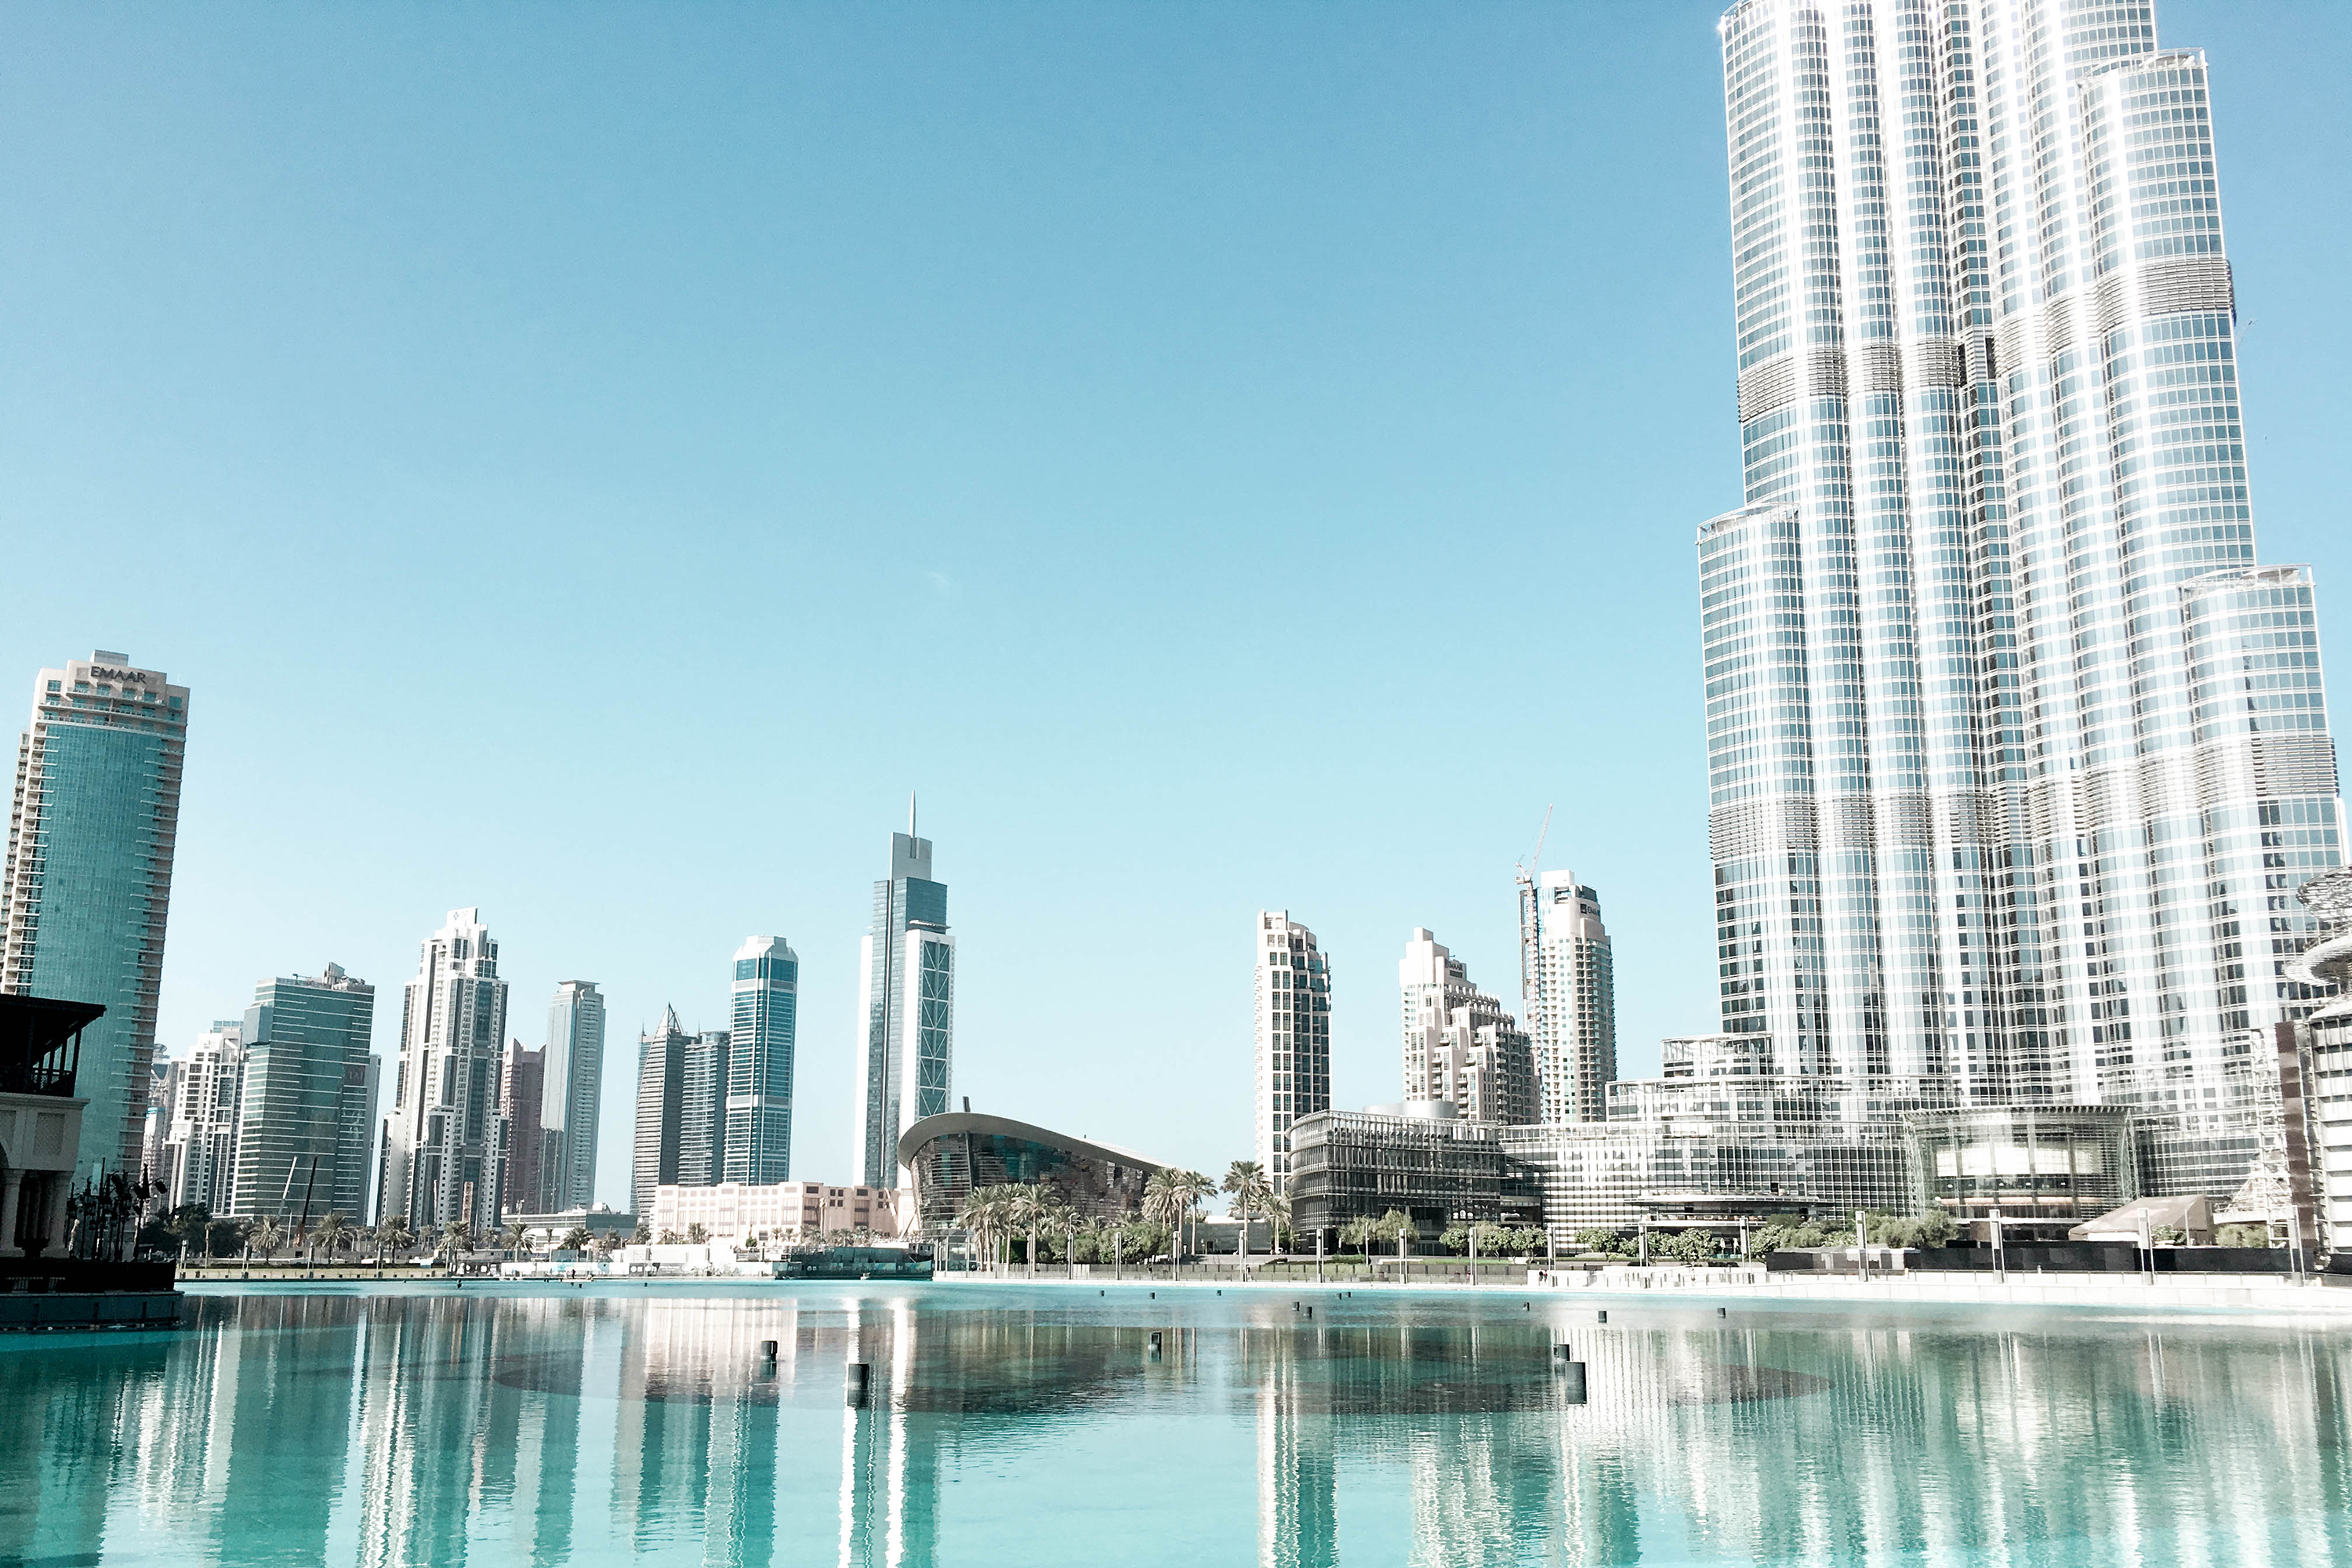 1 day in Dubai – Burj Khalifa